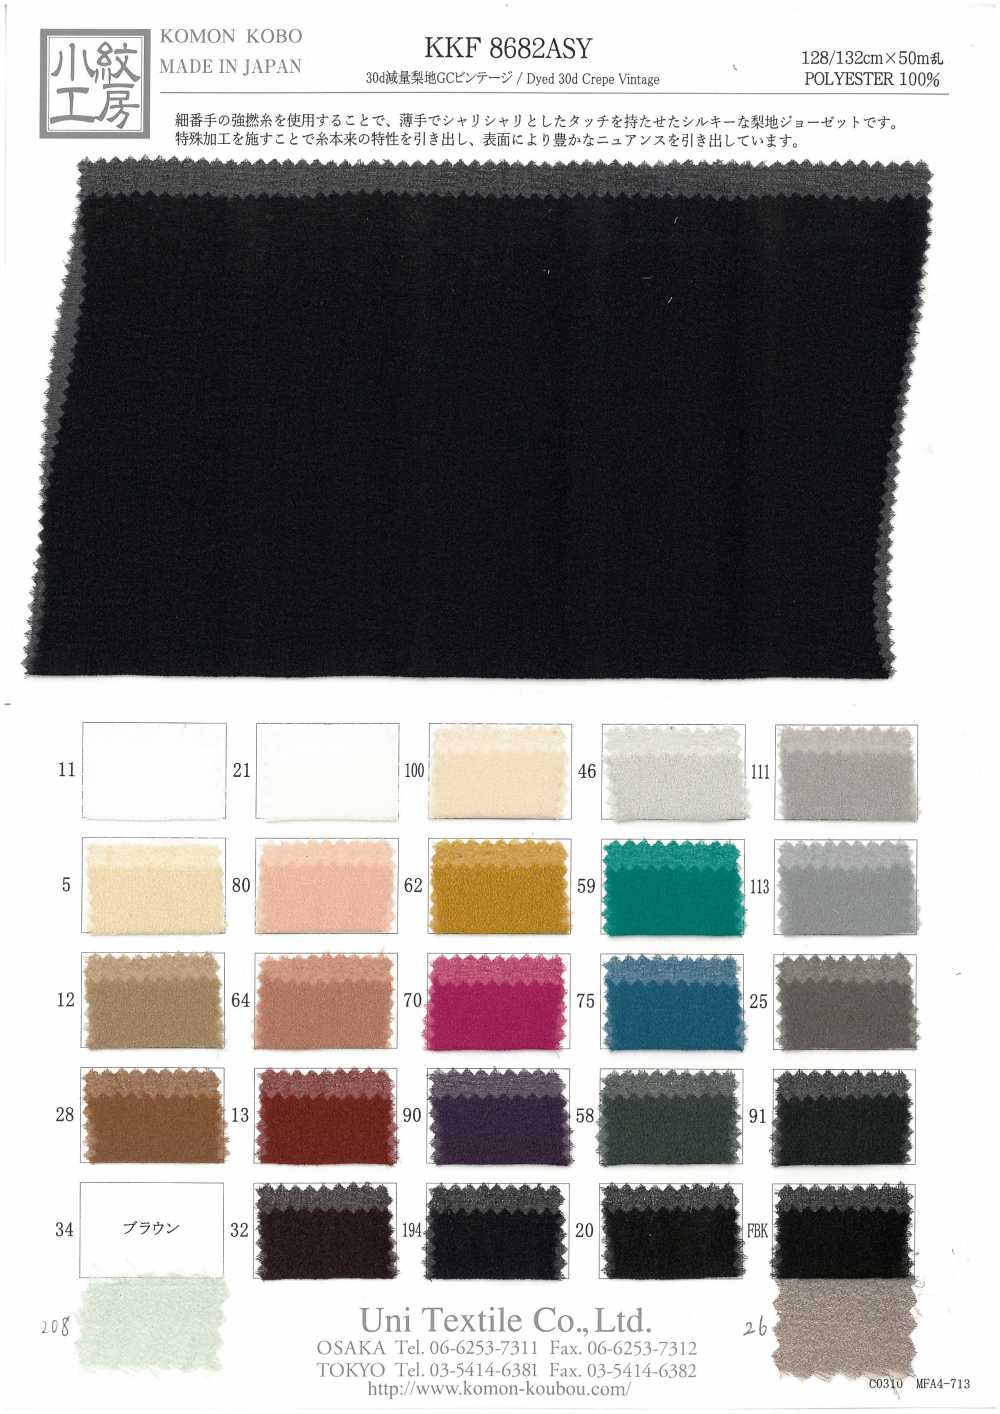 KKF8682ASY Superficie Di Lavaggio A Sabbia Per Perdita Di Peso 30d GC Vintage[Tessile / Tessuto] Uni Textile